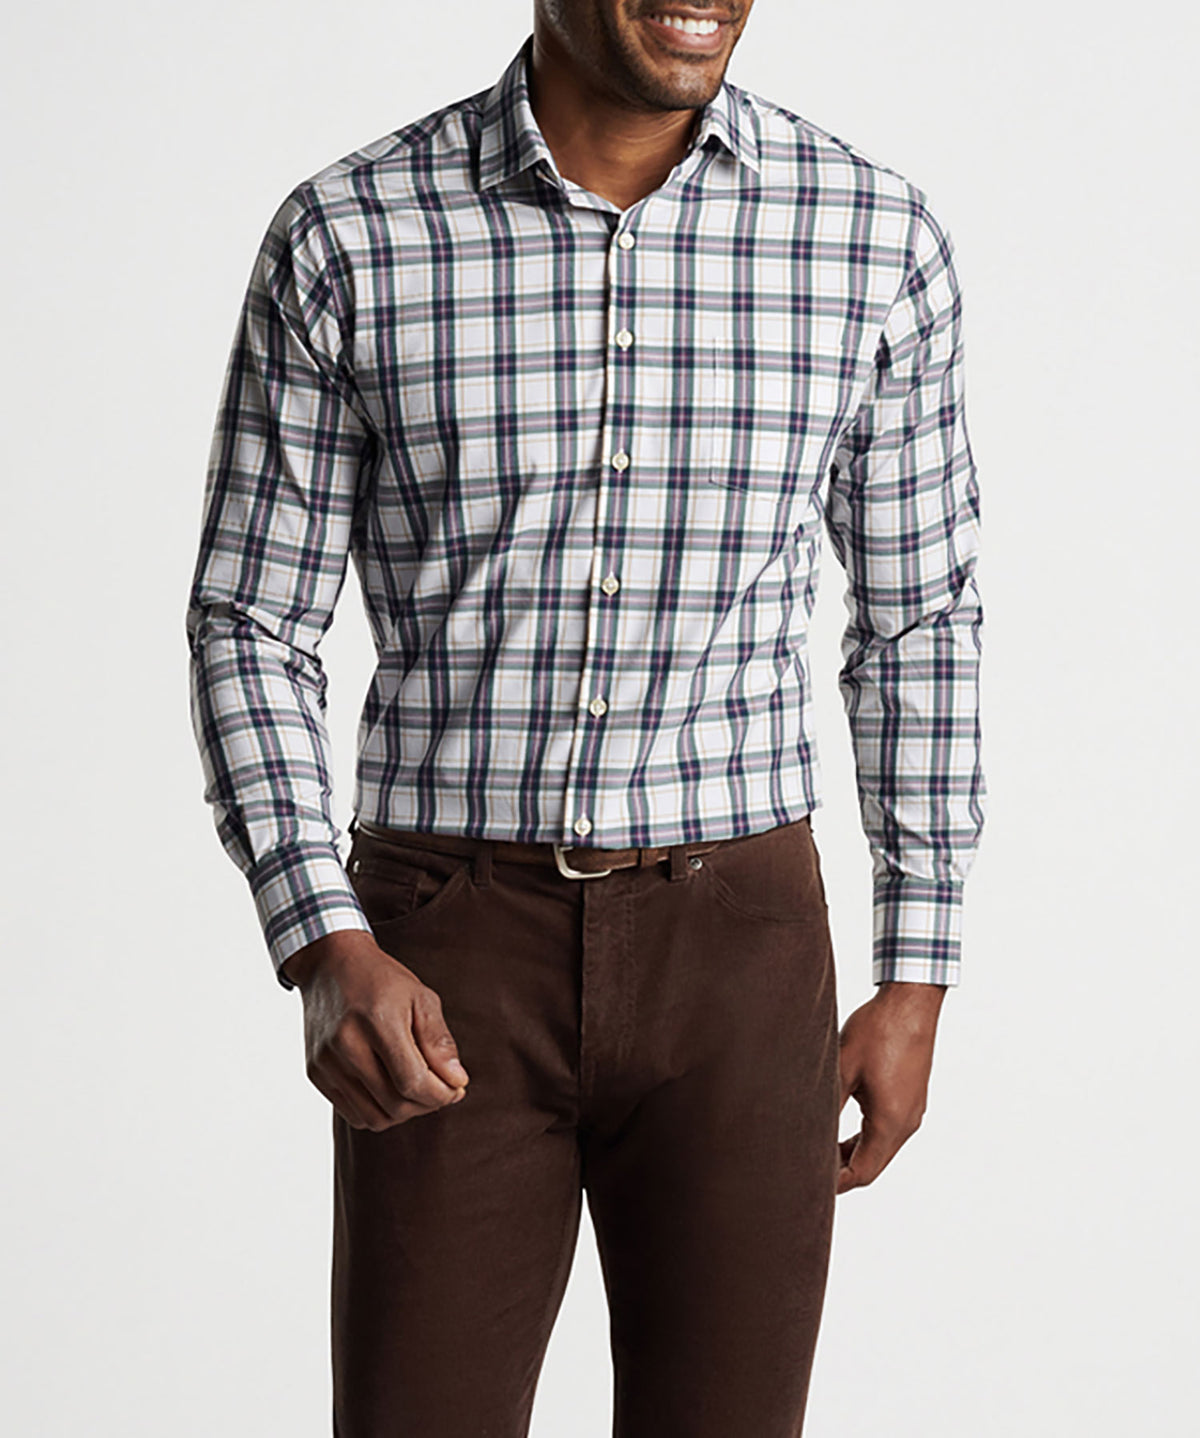 Peter Millar Long Sleeve Randall Sport Shirt, Men's Big & Tall